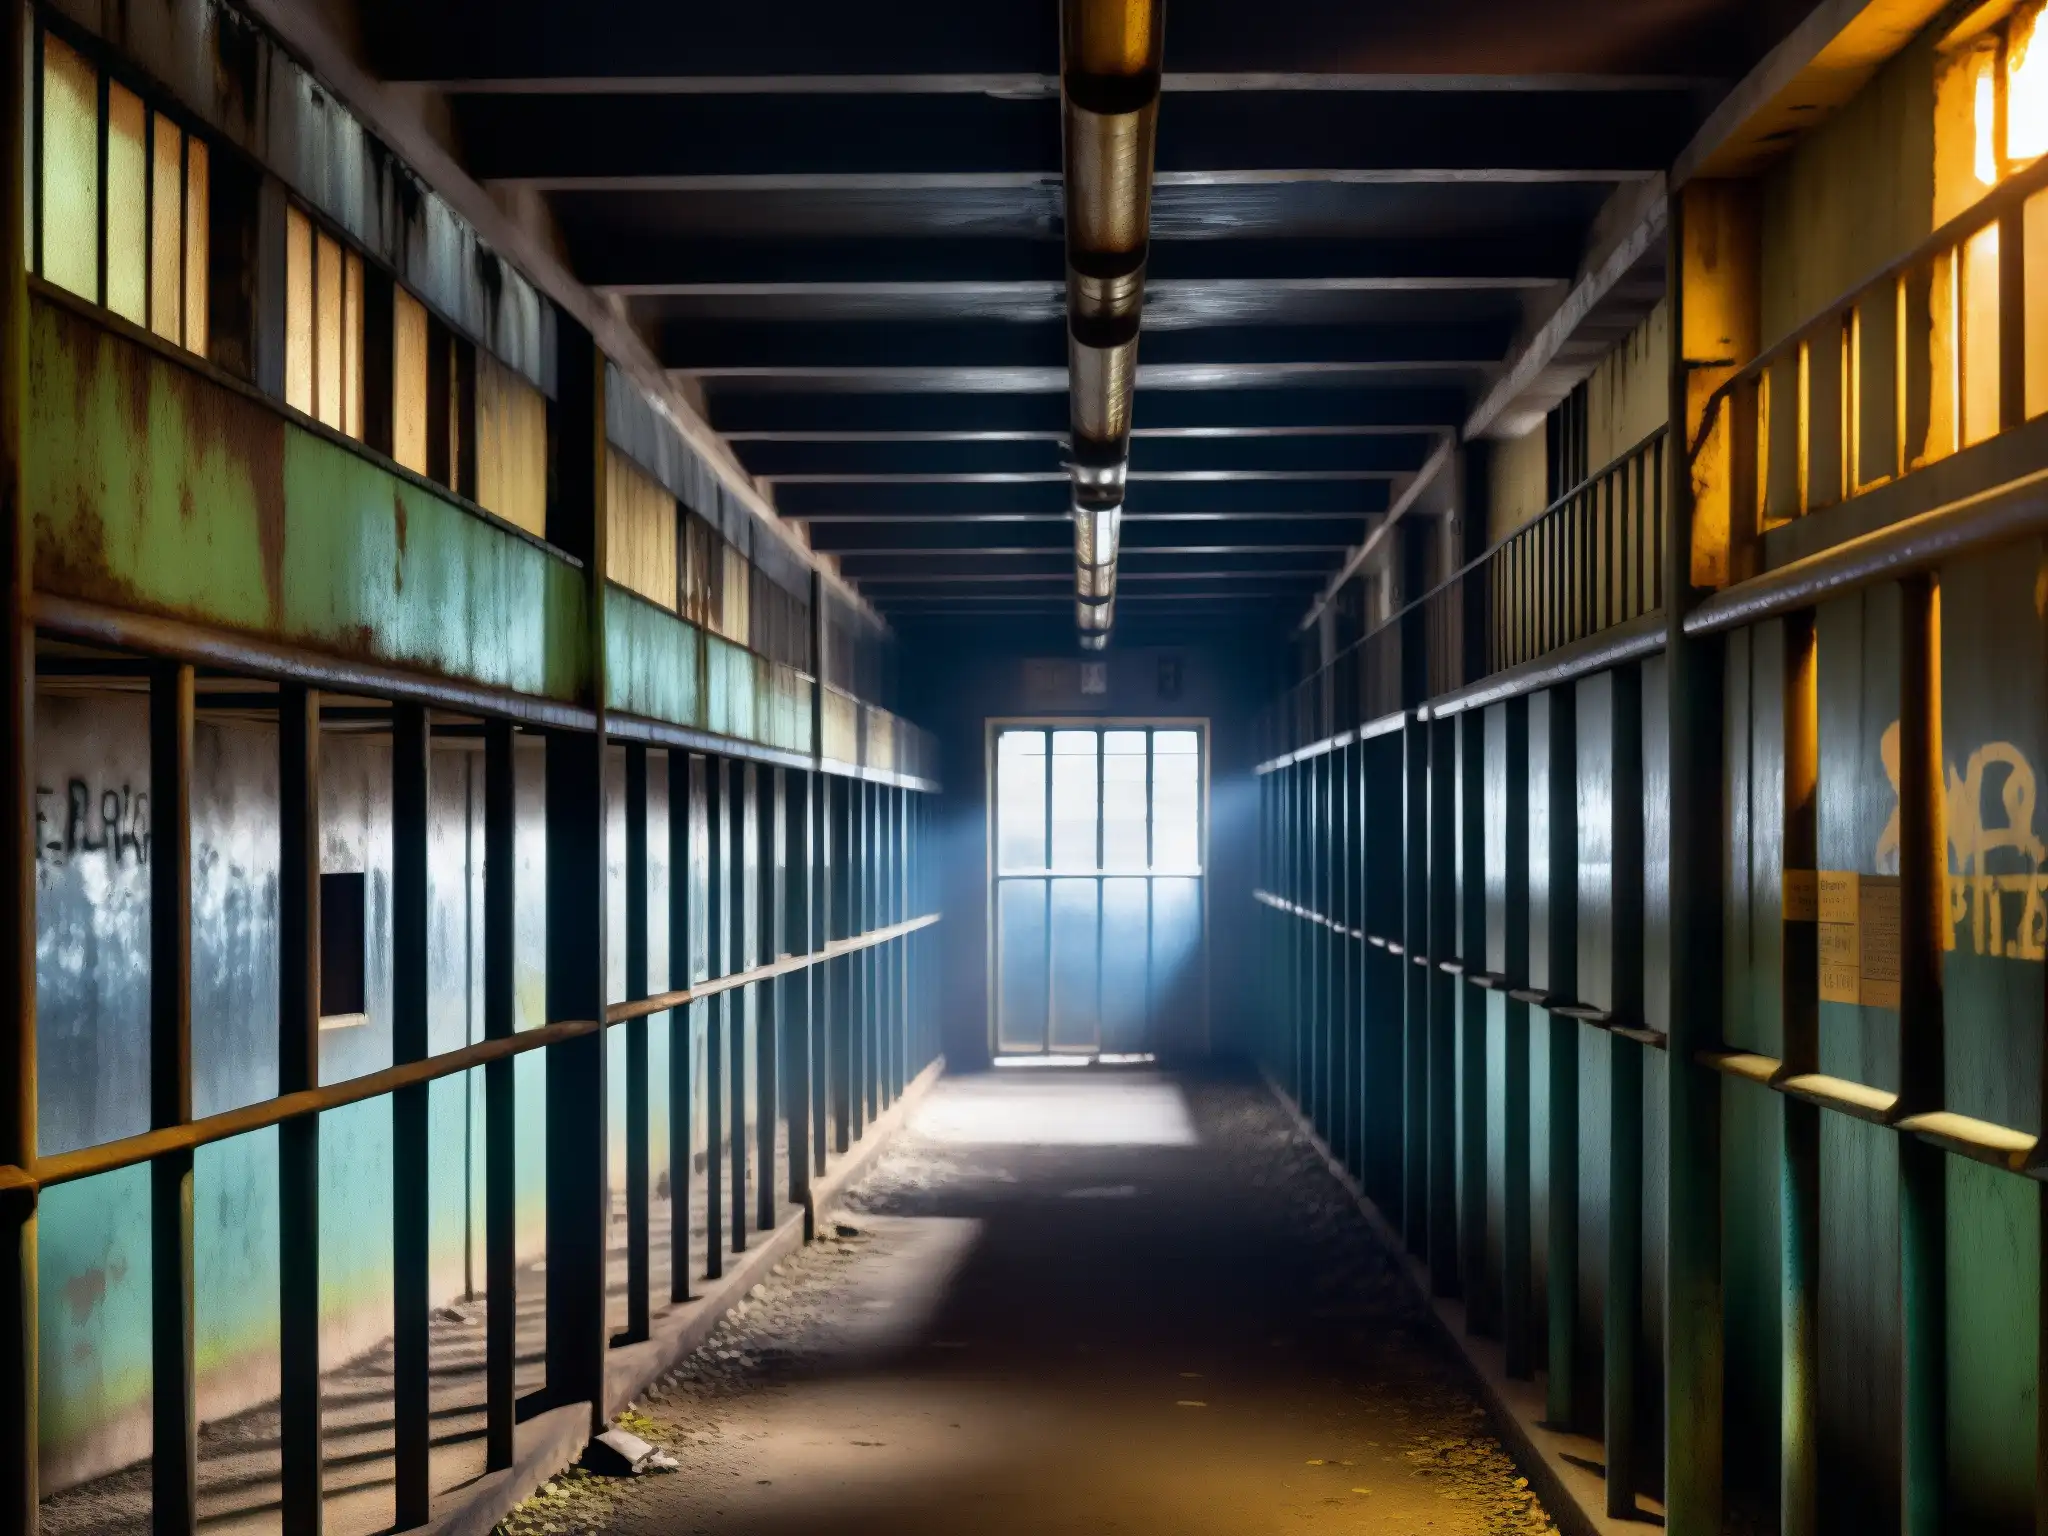 Interior de prisión celular con atmósfera misteriosa, pintura descascarada y rejas oxidadas, evocando mitos y leyendas urbanas